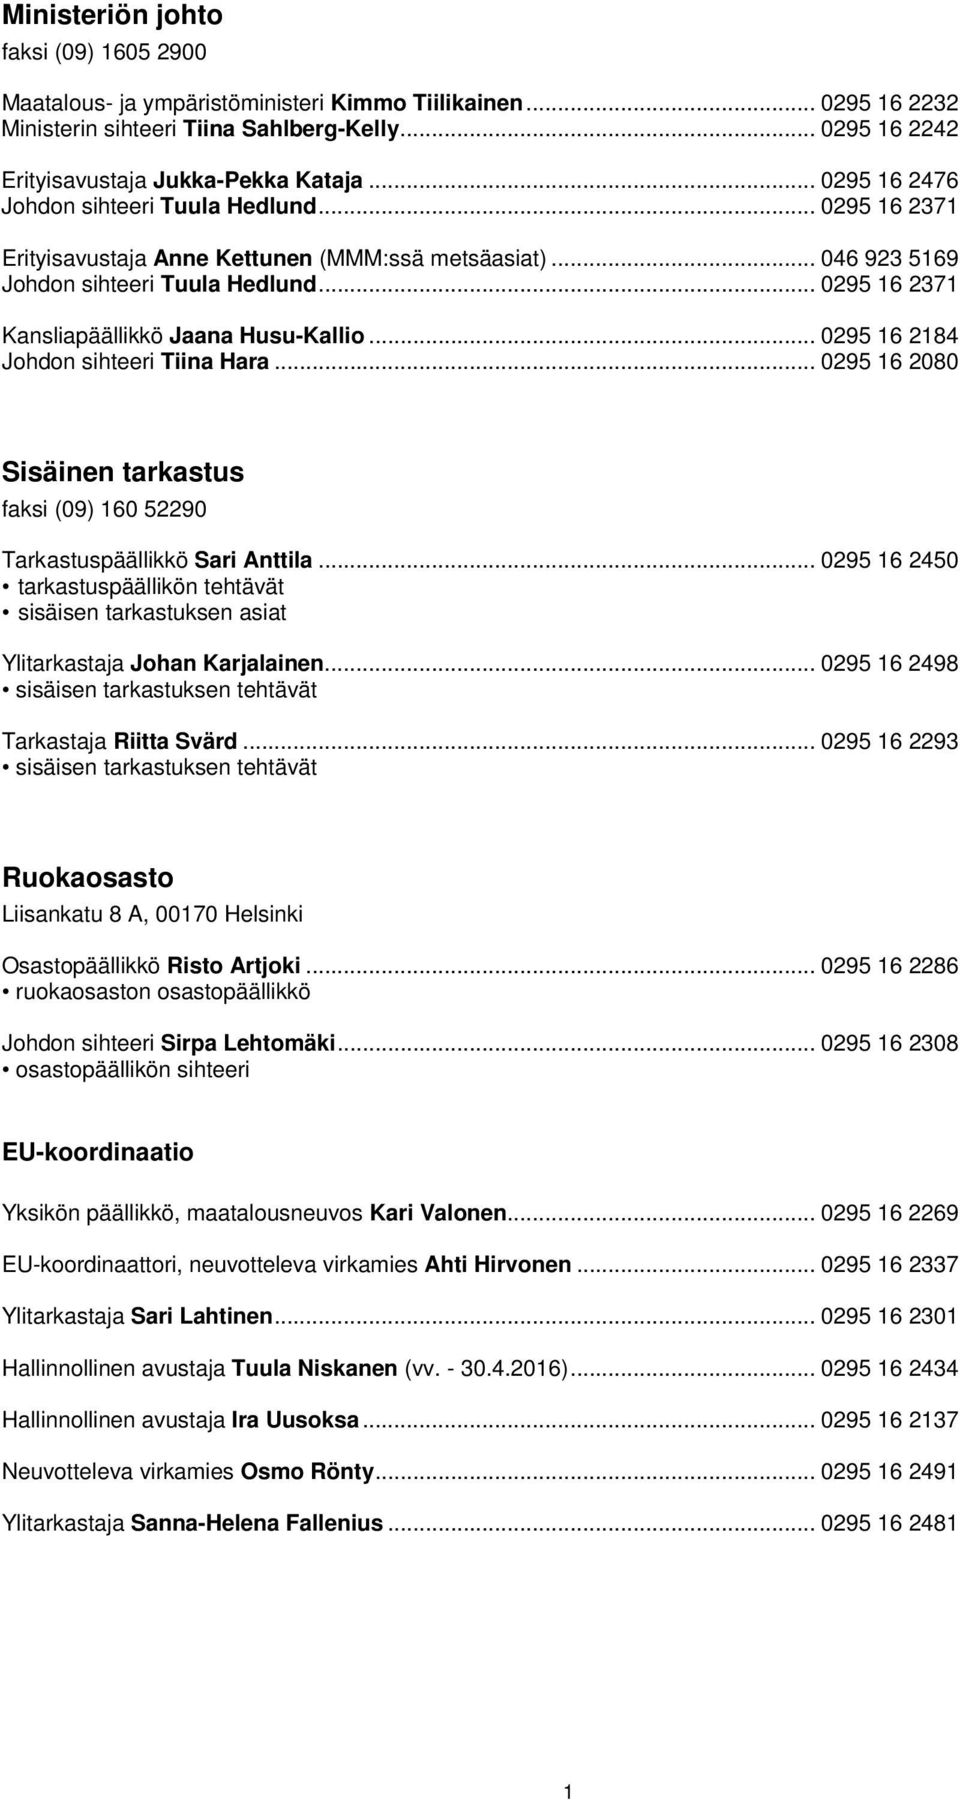 .. 0295 16 2371 Kansliapäällikkö Jaana Husu-Kallio... 0295 16 2184 Johdon sihteeri Tiina Hara... 0295 16 2080 Sisäinen tarkastus faksi (09) 160 52290 Tarkastuspäällikkö Sari Anttila.